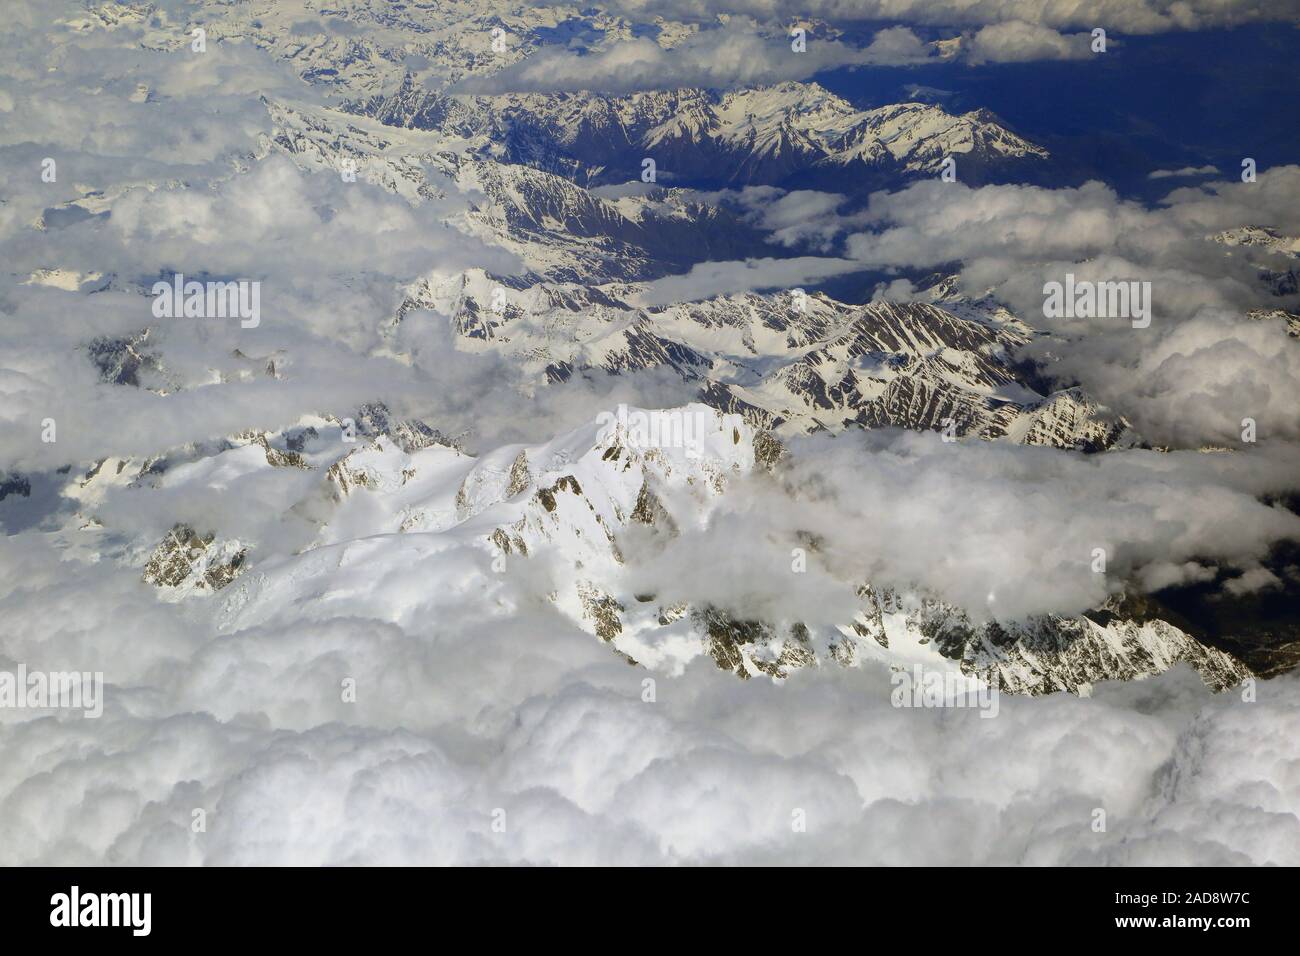 France, Alpes couvertes de neige dans la région du Mont Blanc Banque D'Images